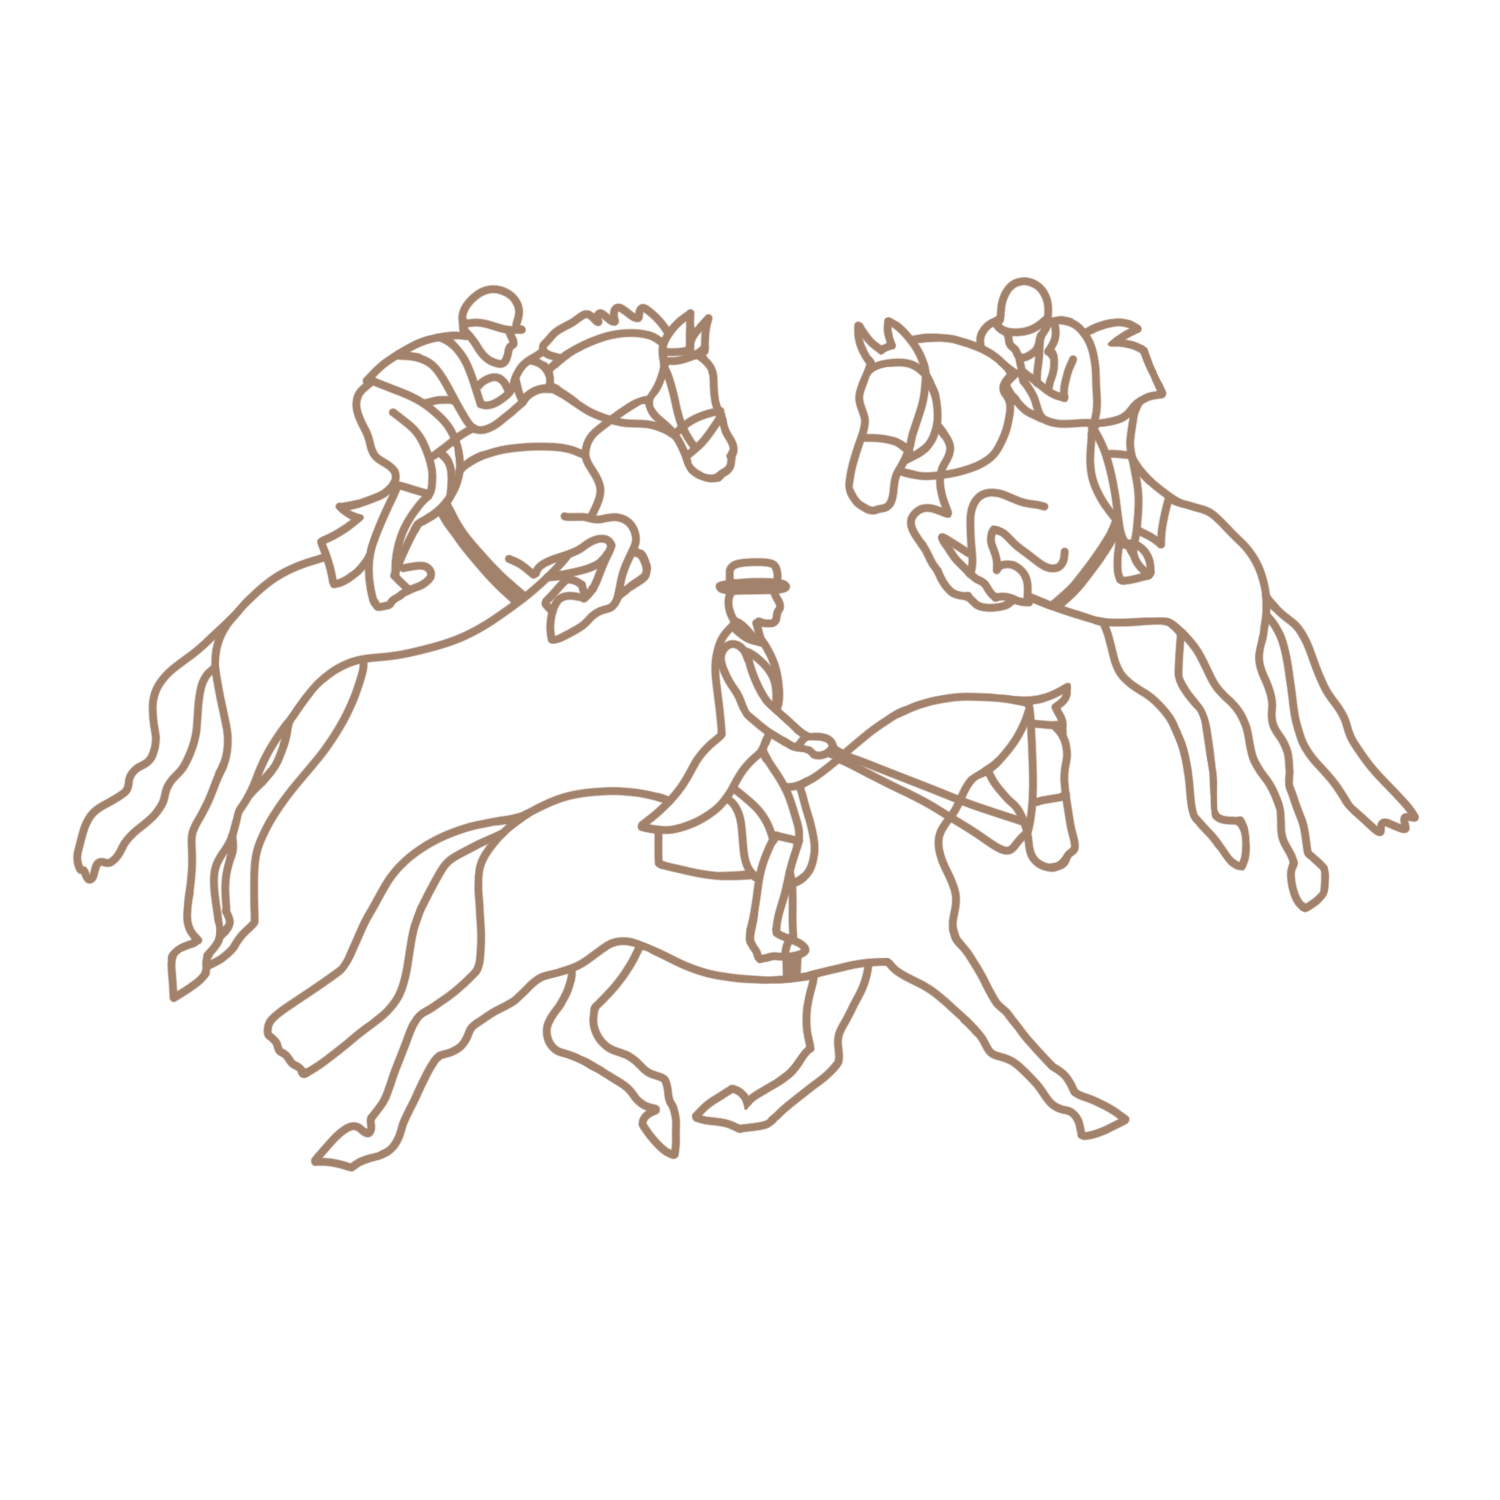 White Winds Farm Equestrian Center